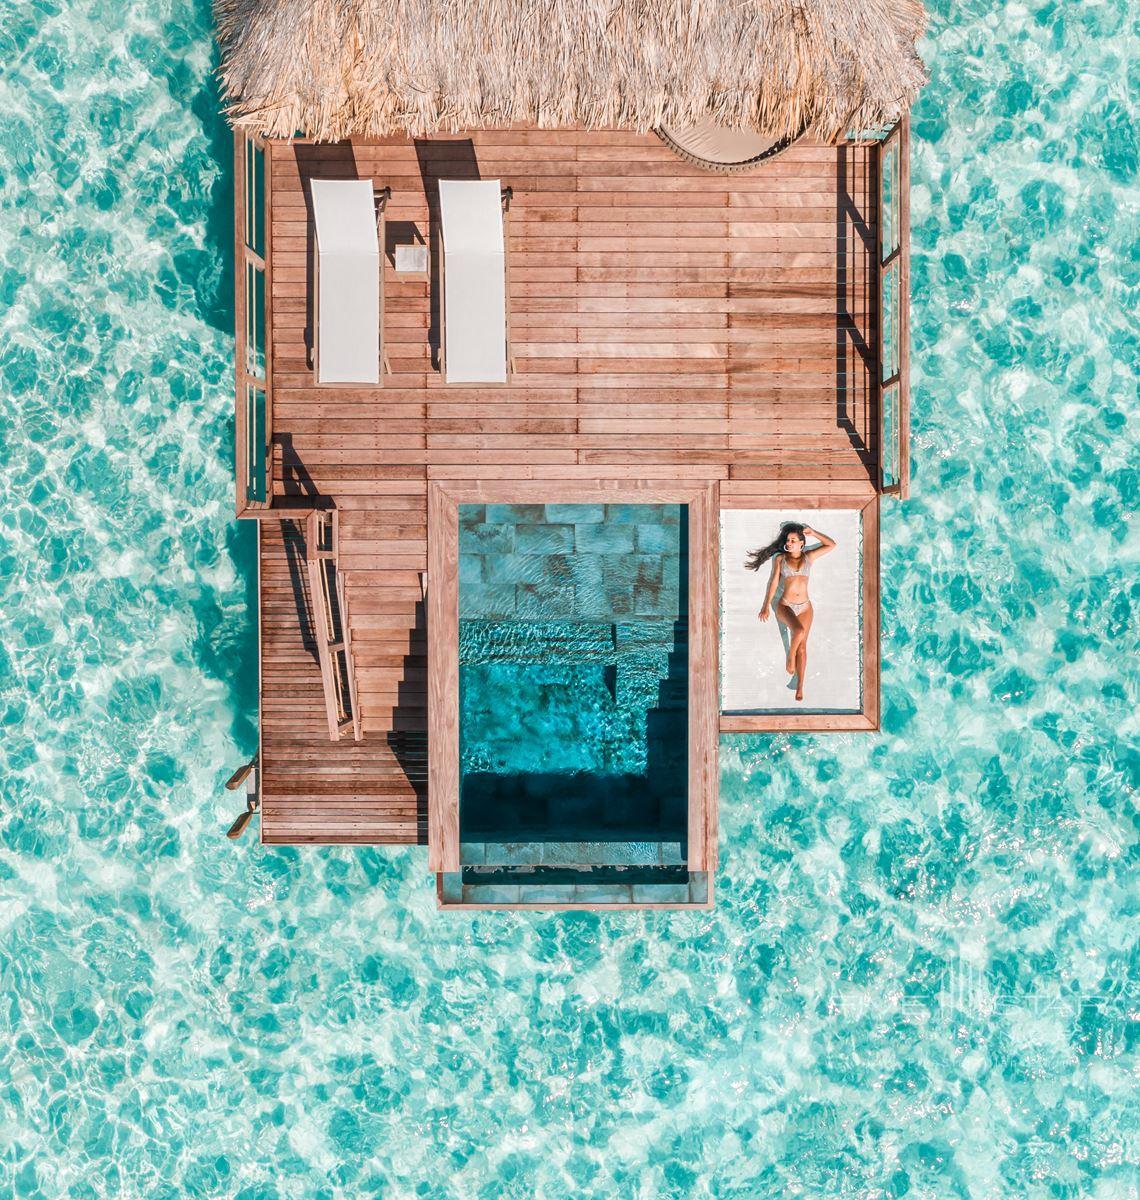 Le Bora Bora Pearl Resort